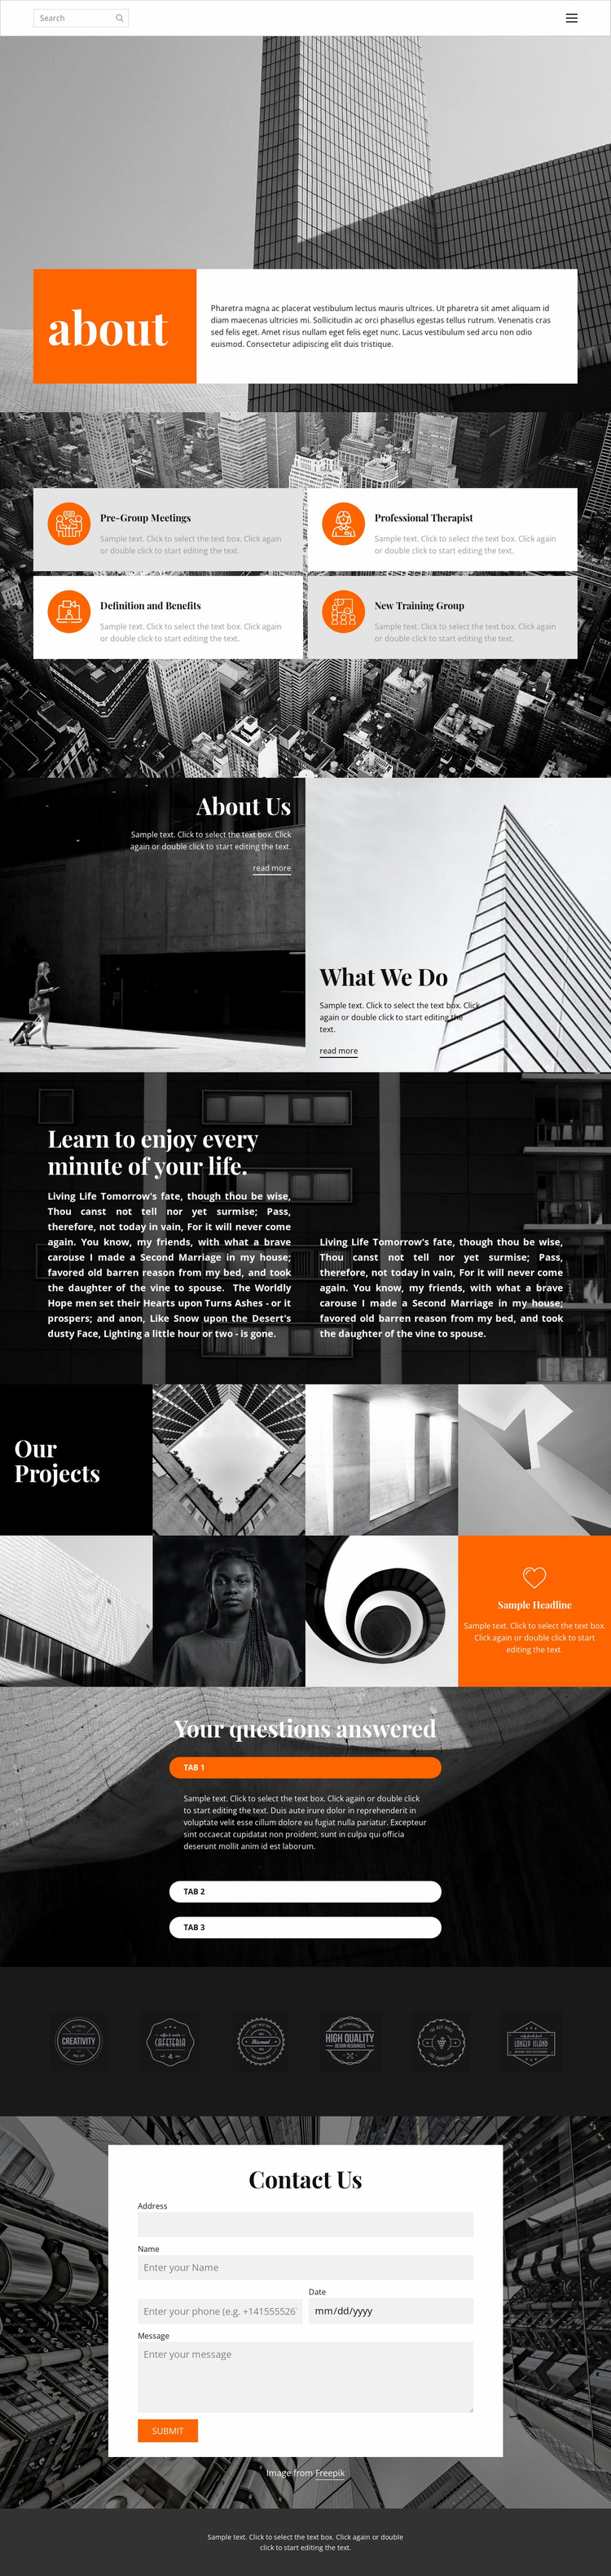 New projects studio Website Design